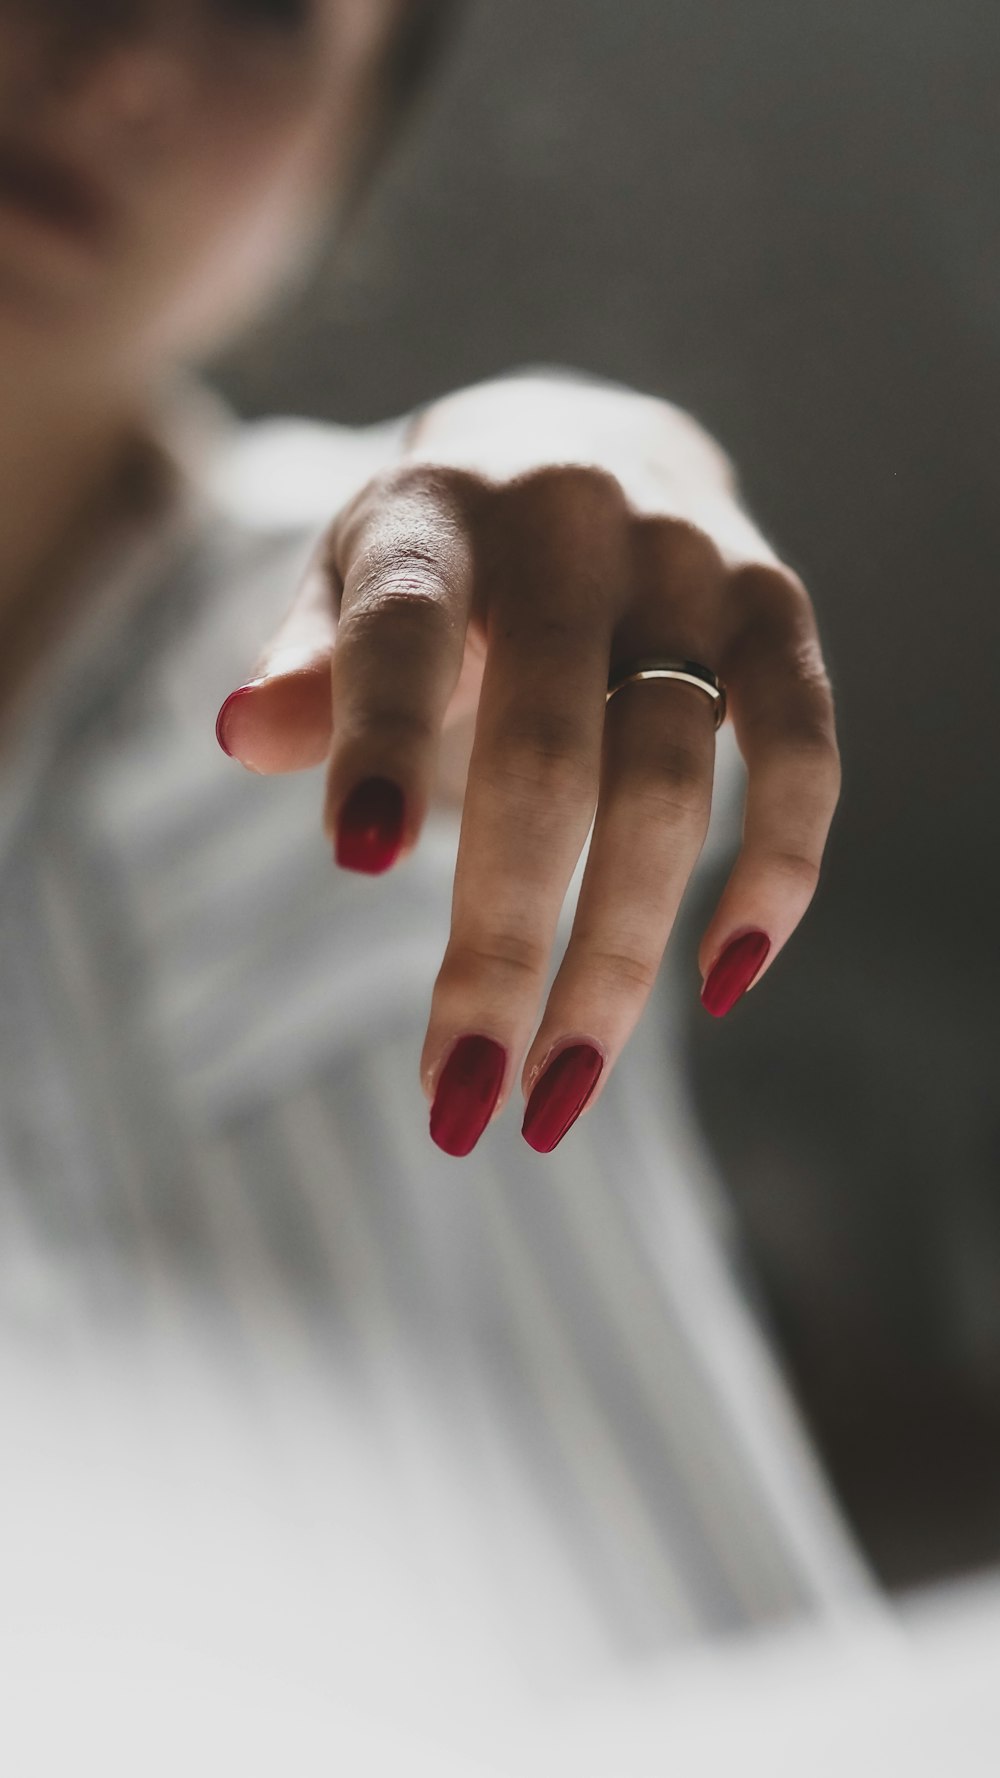 Persona que lleva un anillo de plata en el dedo anular izquierdo